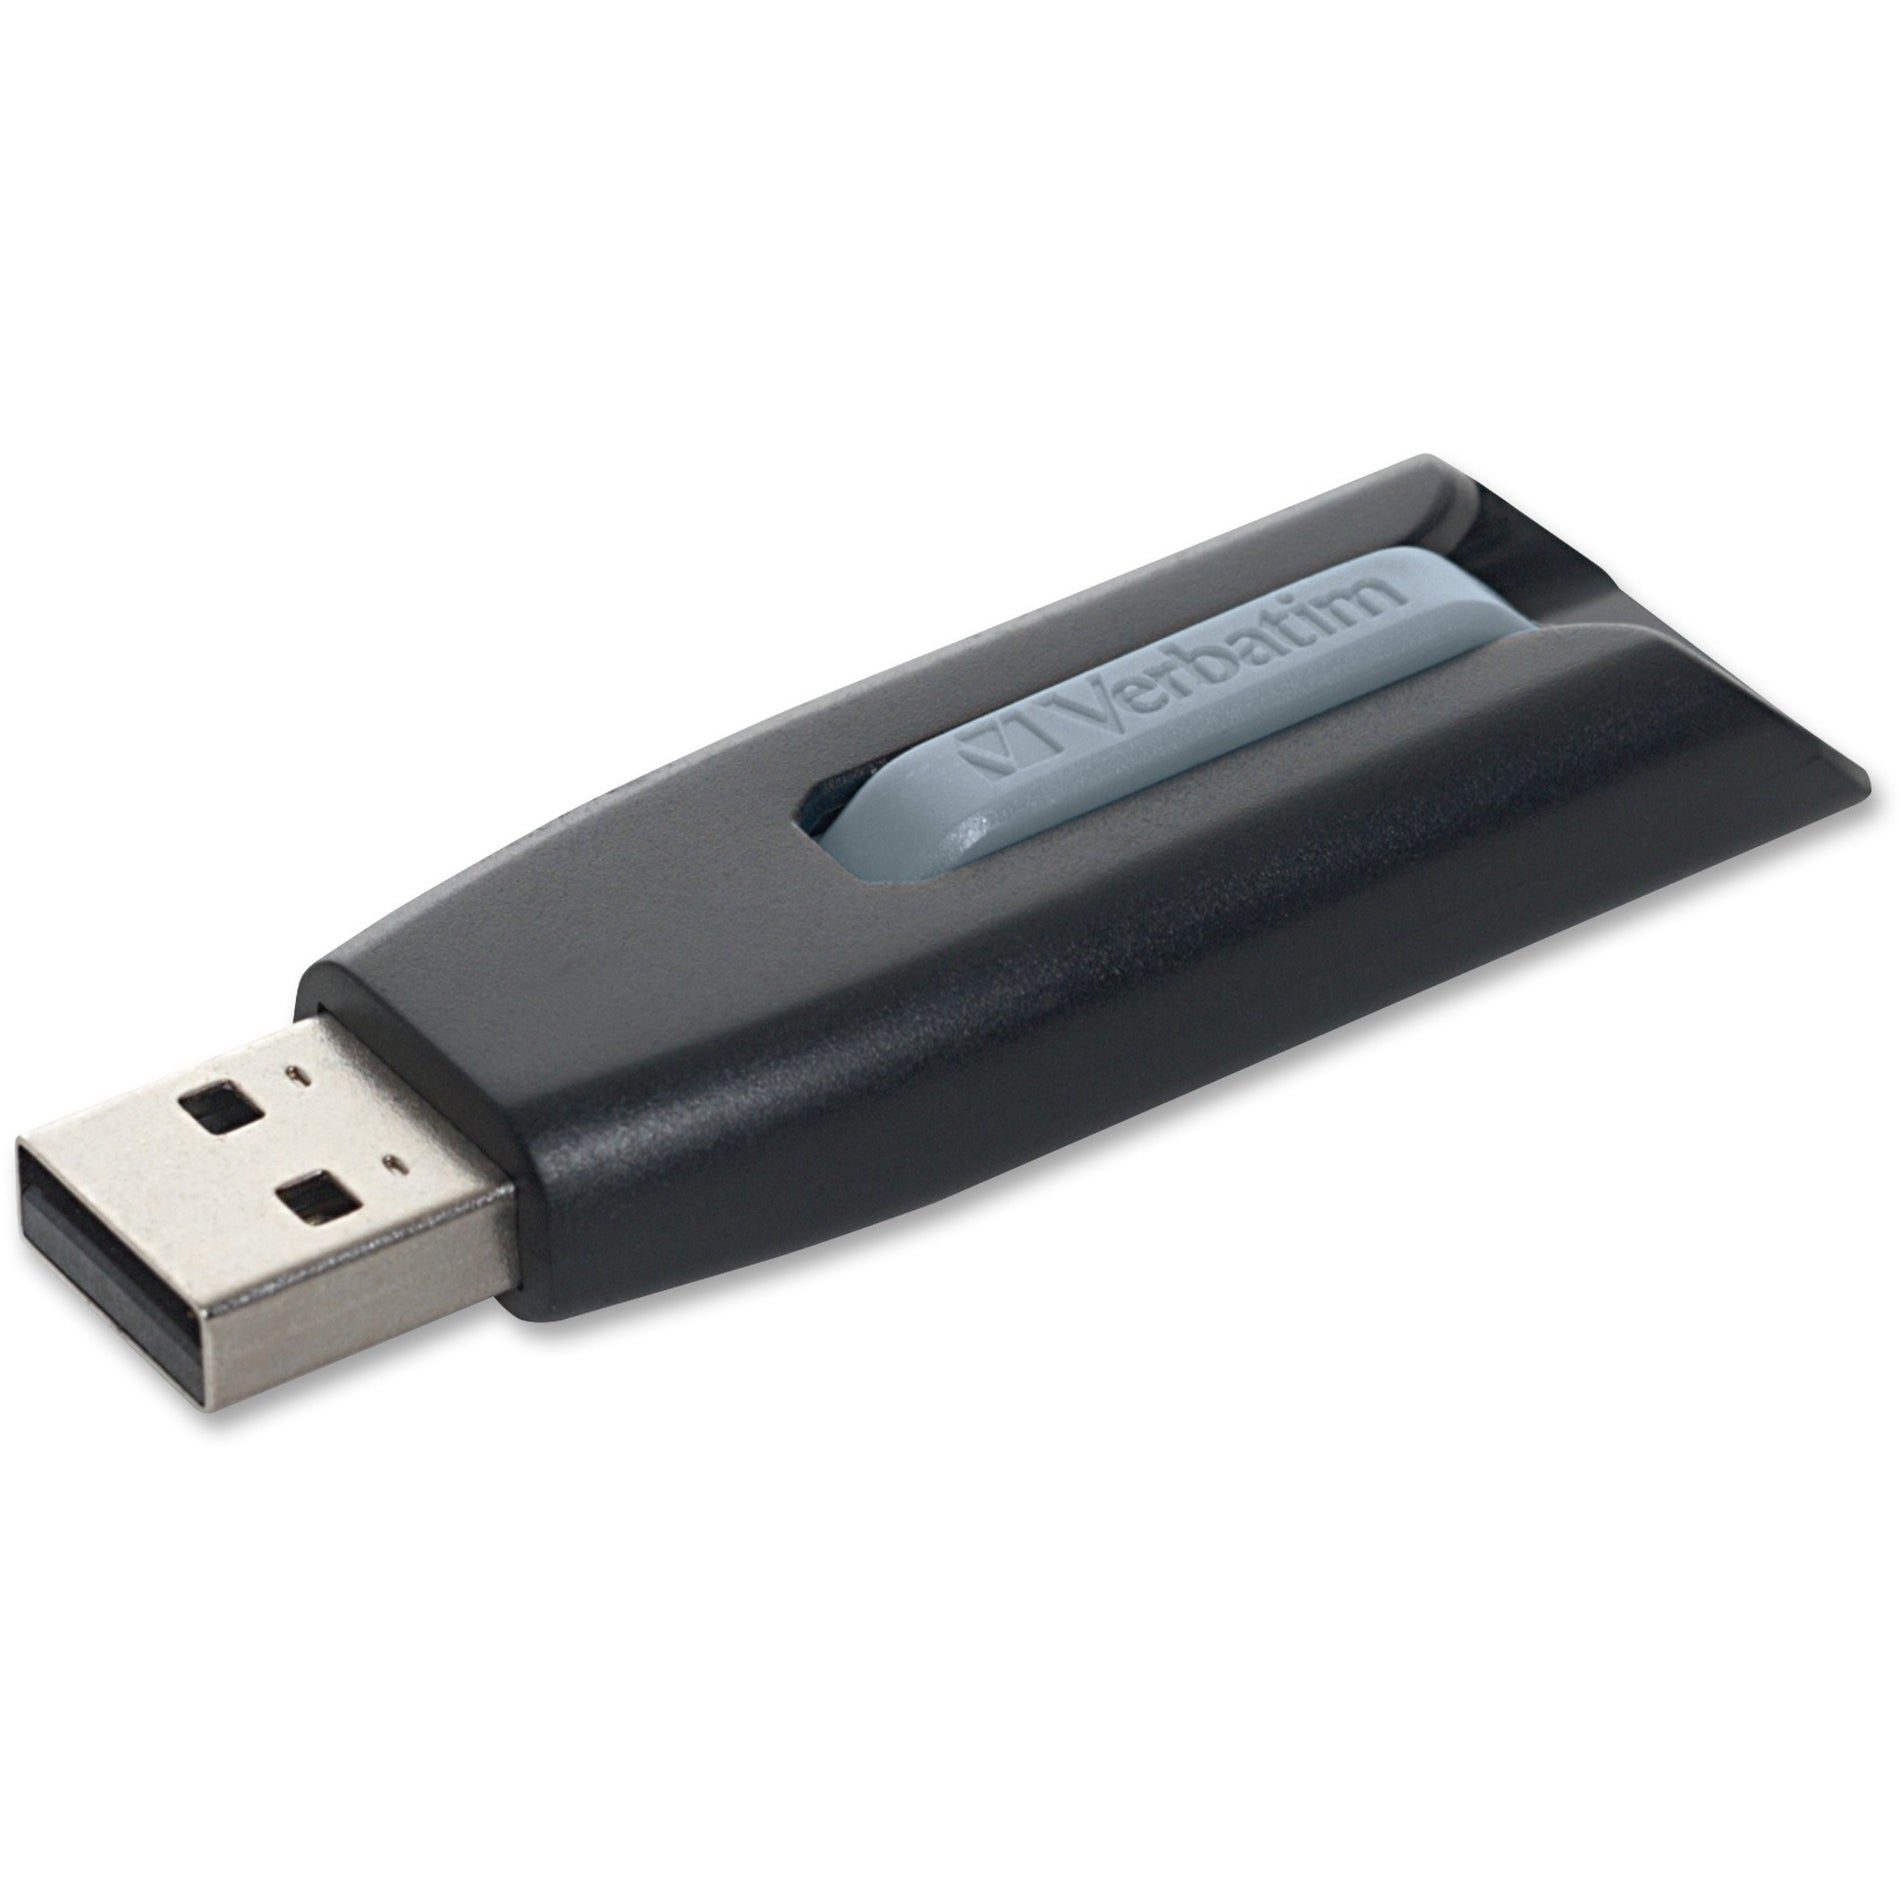 Microban 49173 Store 'n' Go V3 USB Drive 32GB Gray マイクロバン 49173 ストア 'n' ゴー V3 USB ドライブ、32GB、グレー